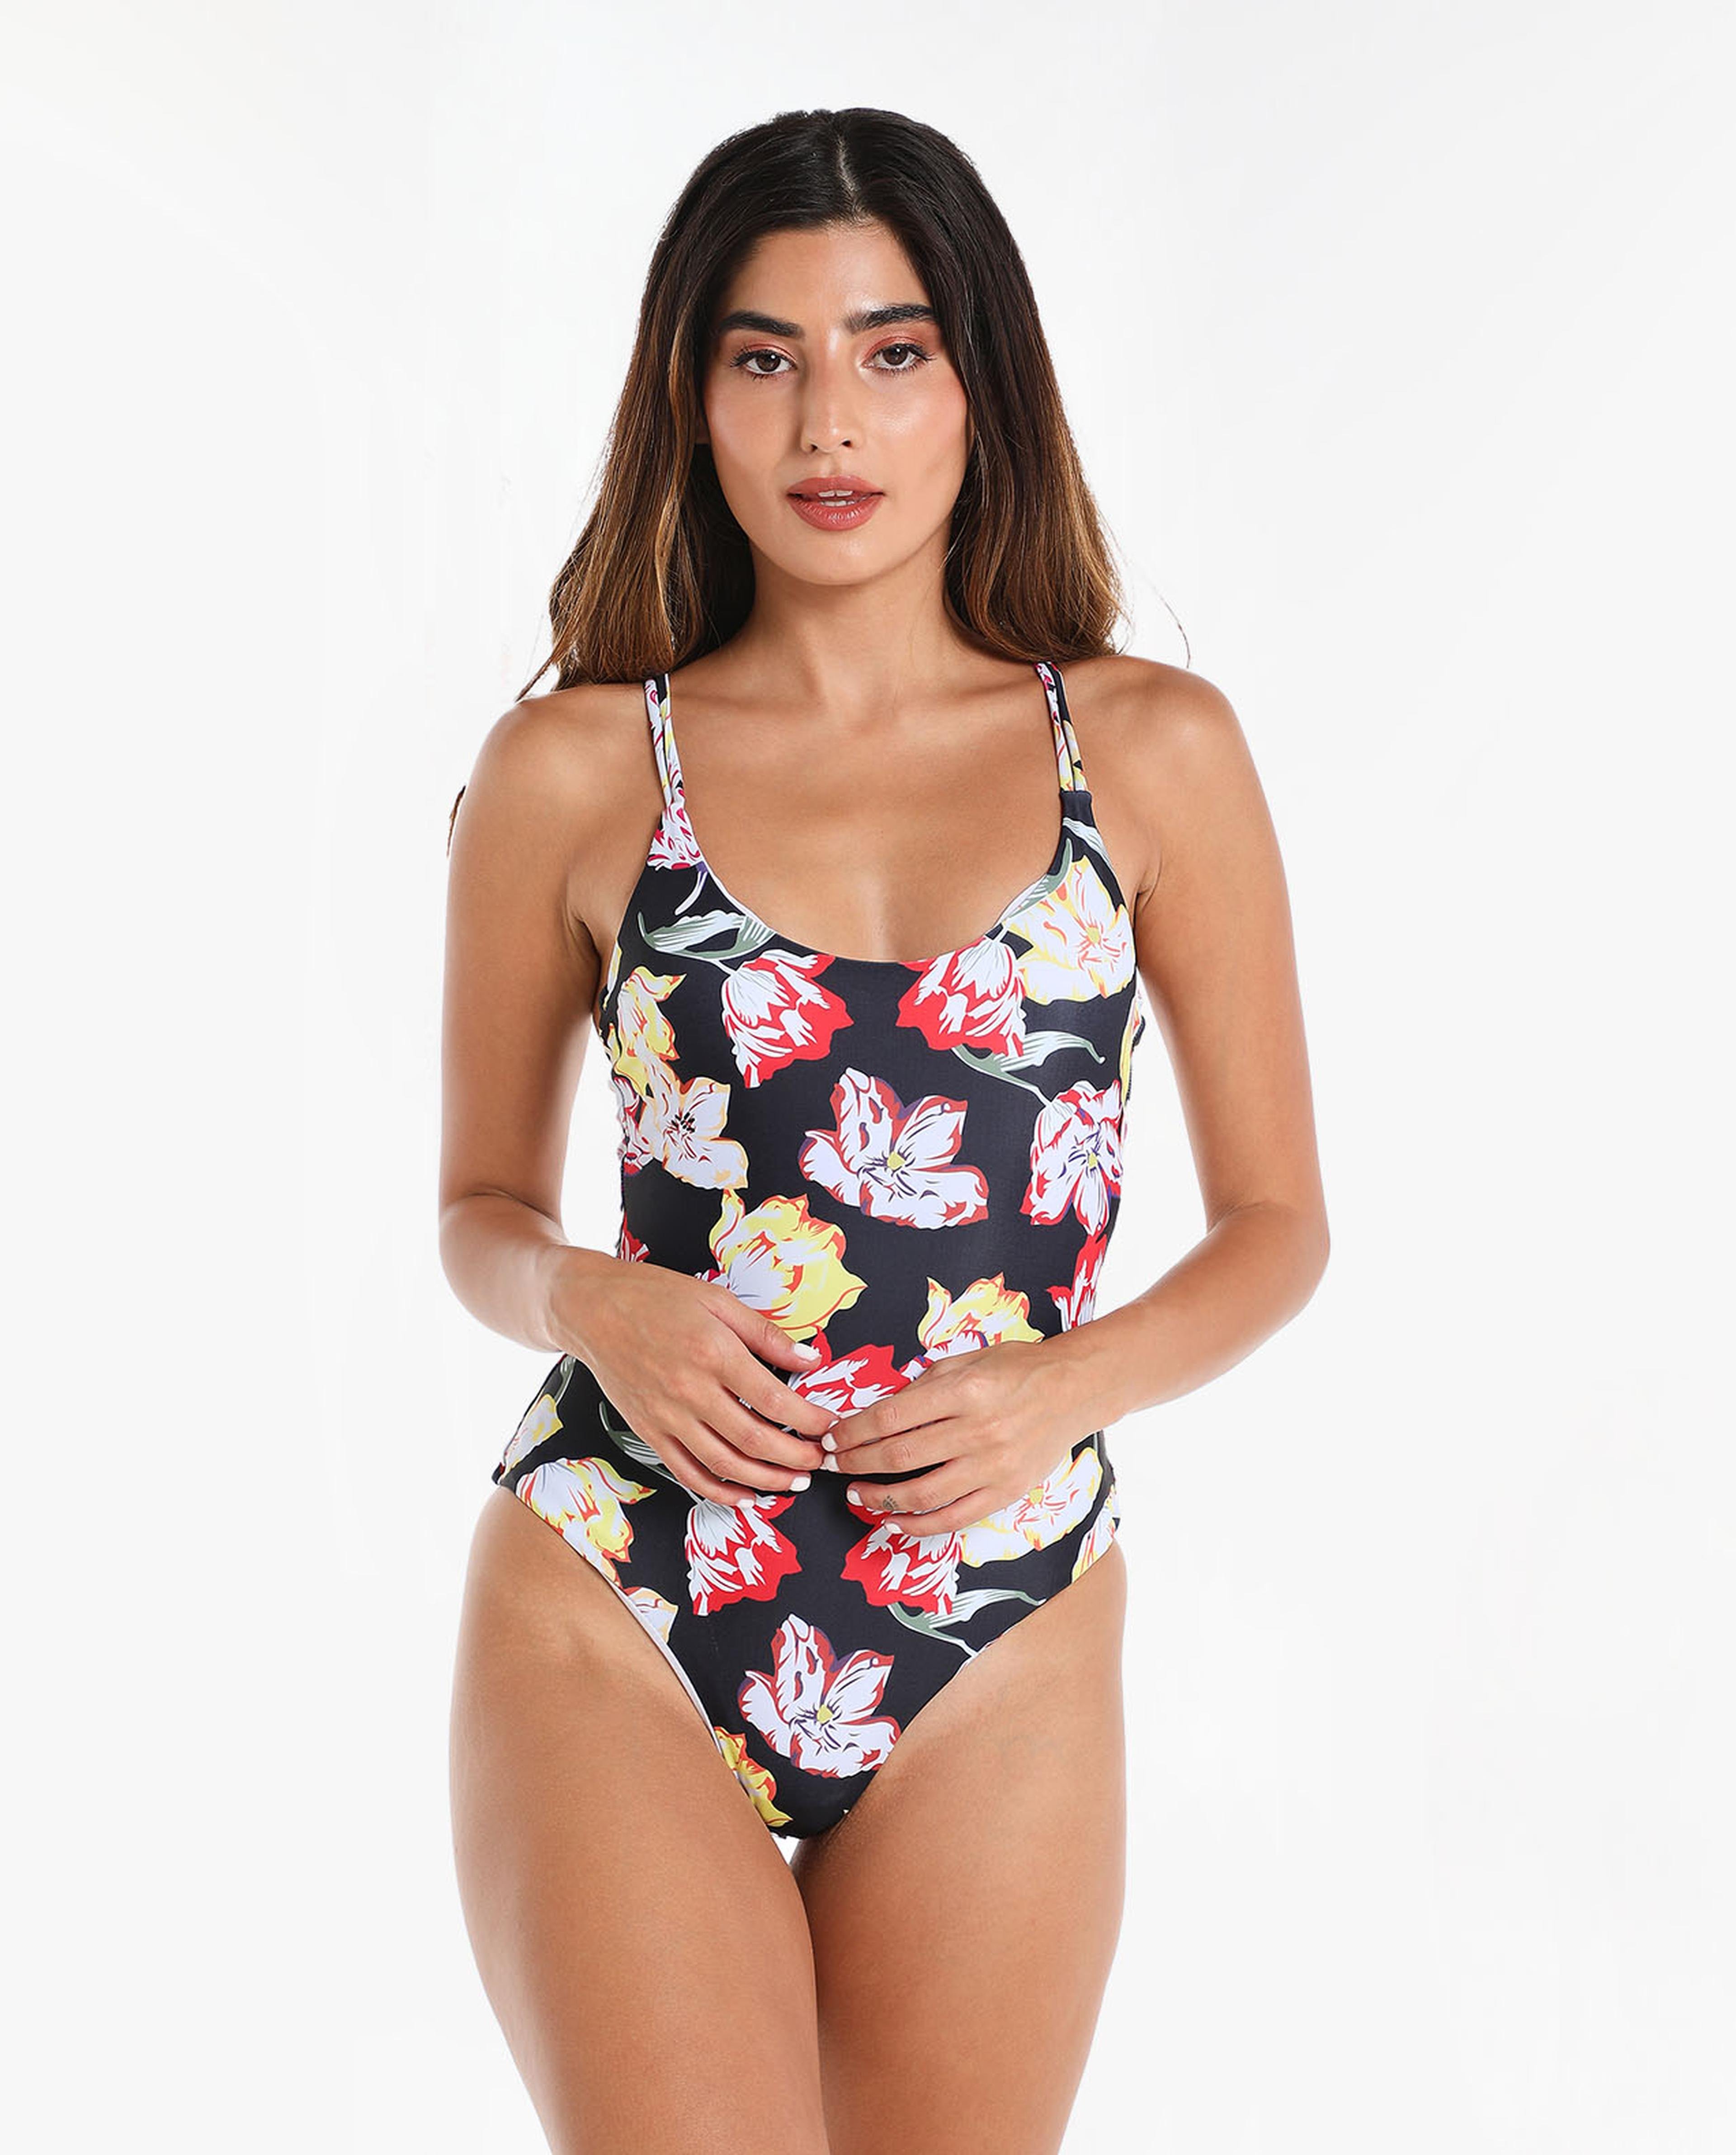 Buy Floral Pattern Women Bikini Online